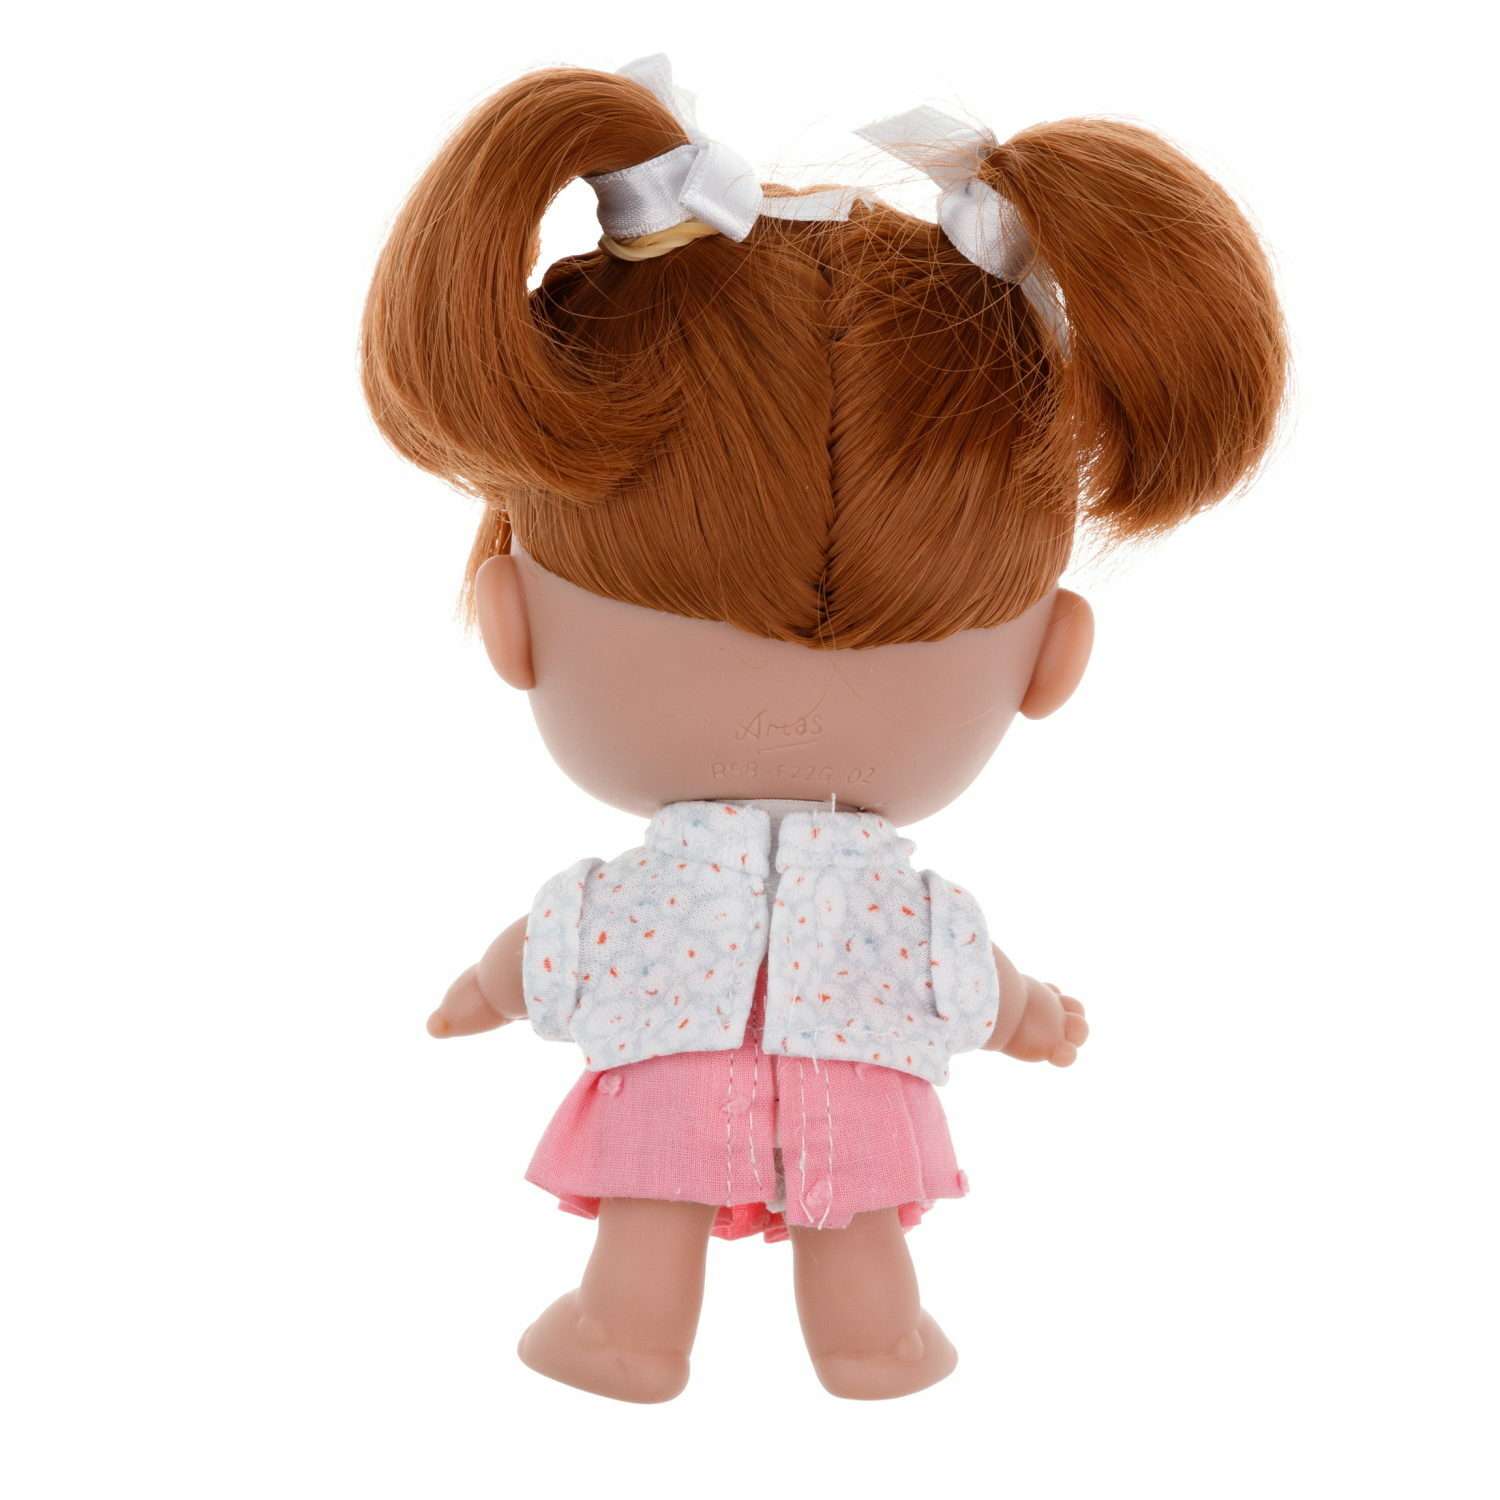 Кукла Arias elegance pequitas с рыжими волосами c cоской в розовой юбке и белой кофточке 17 см Т19780-8 - фото 4